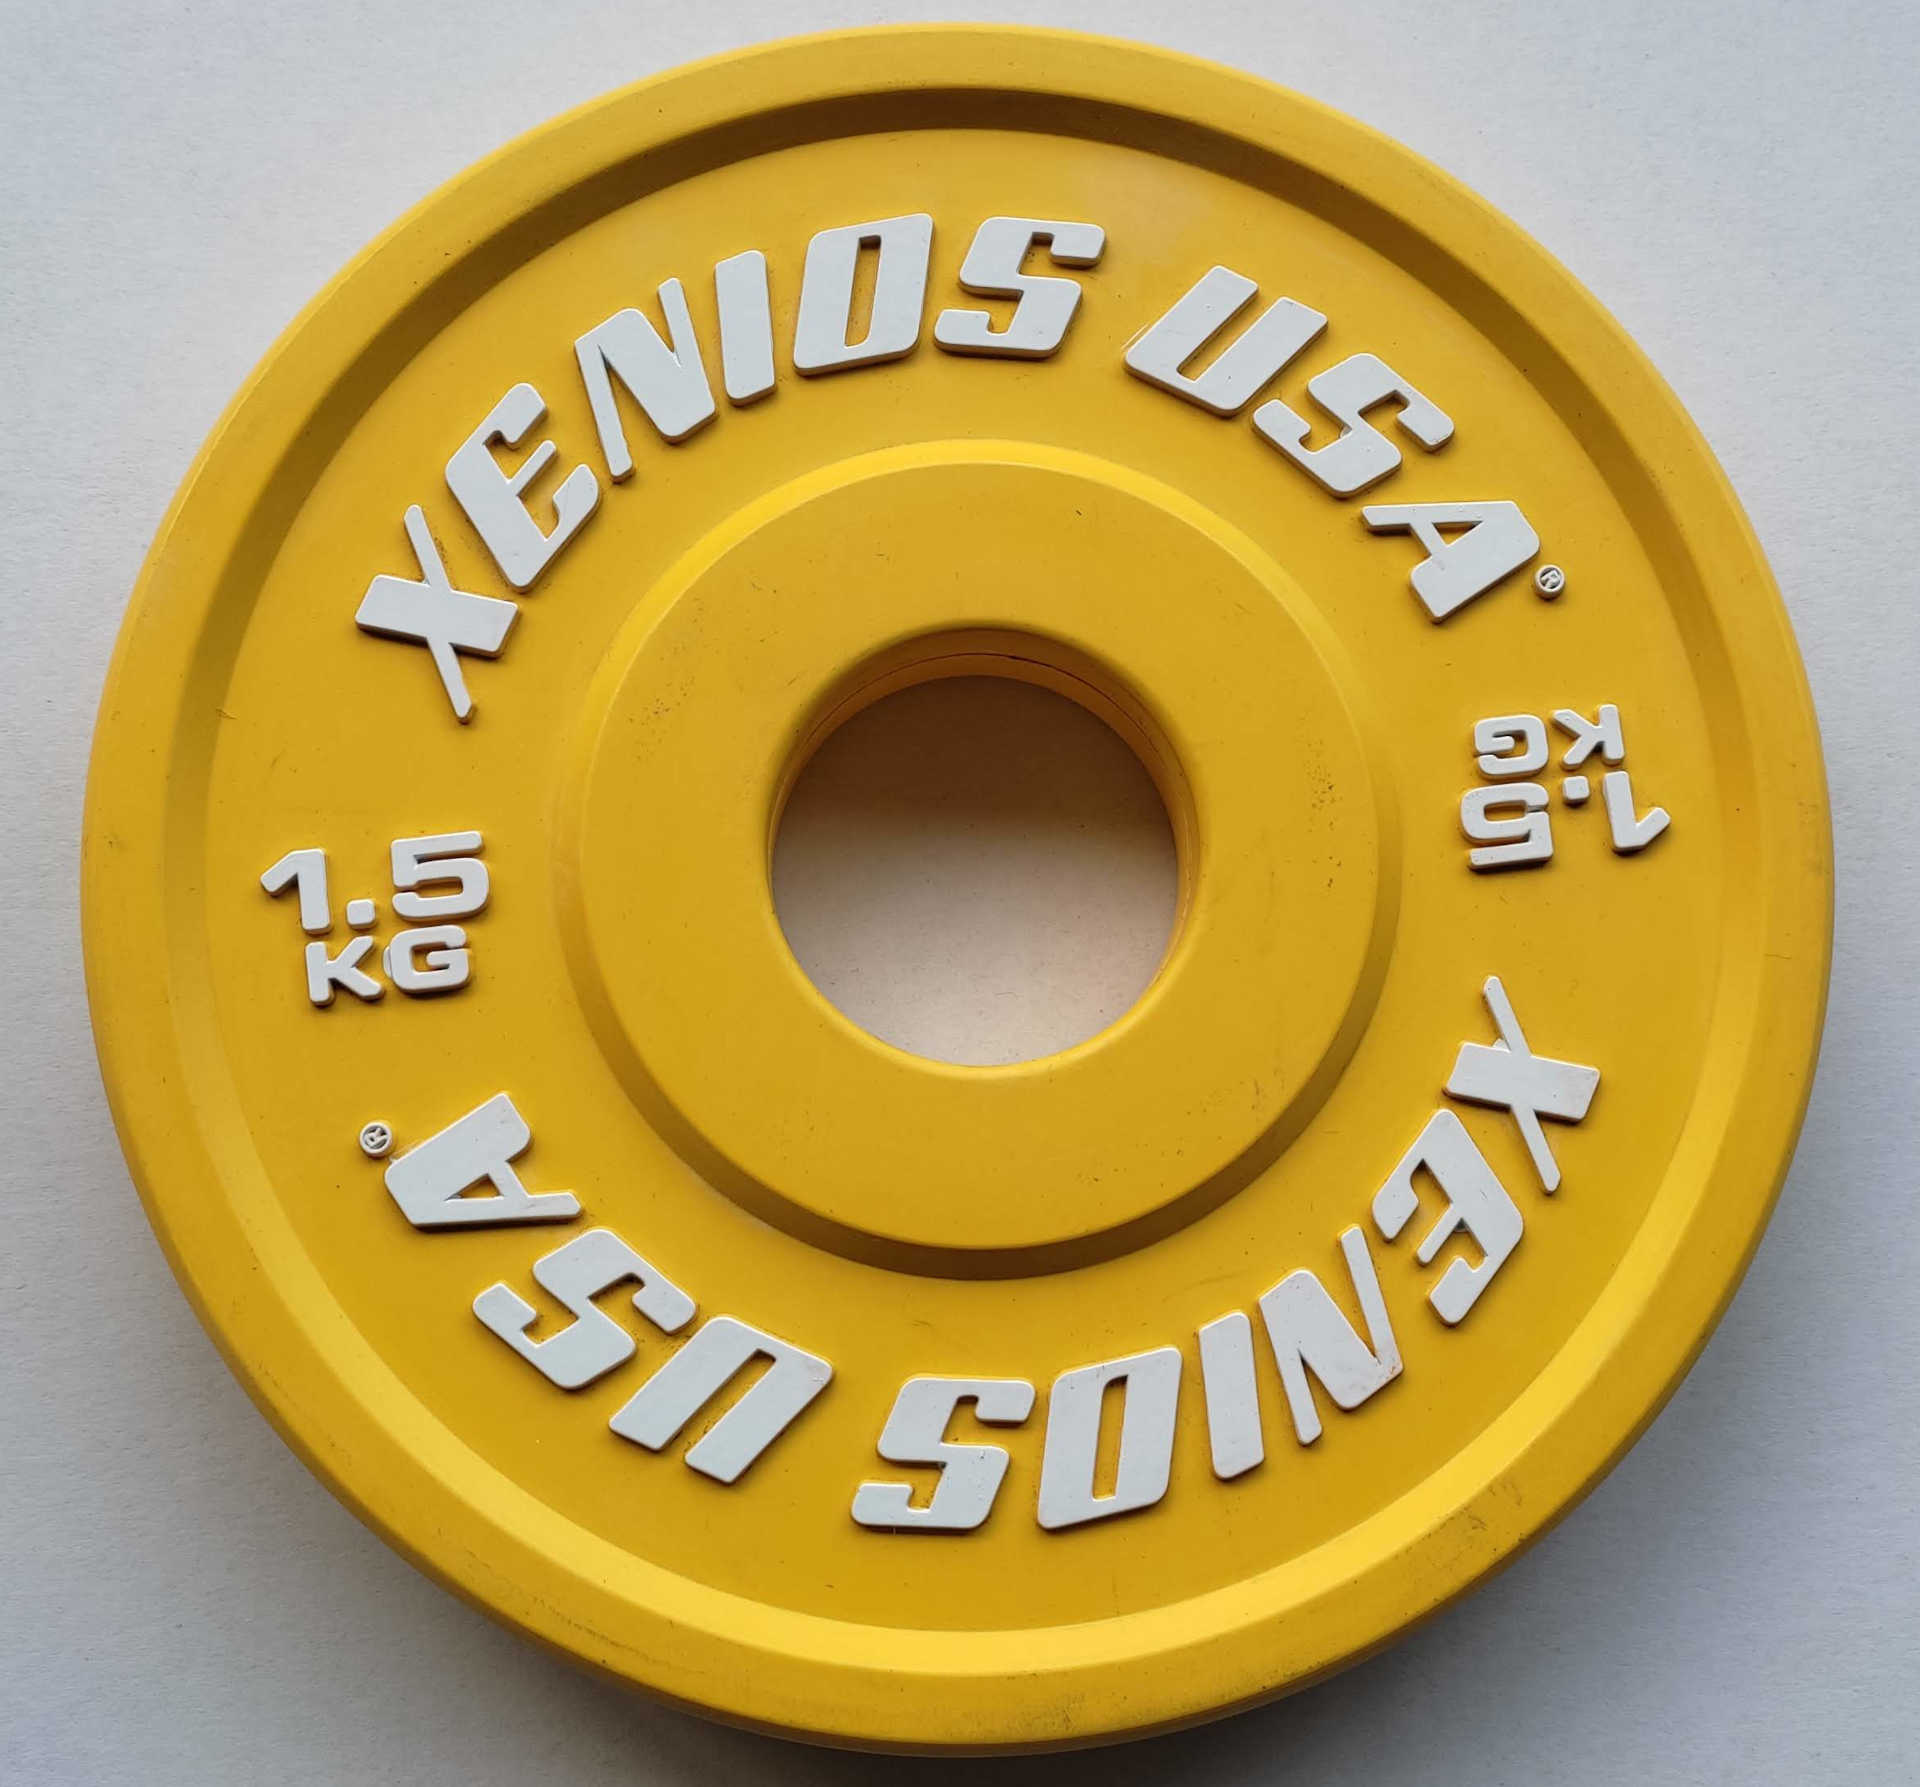 Xenios Mini Rubber Bumper Plate 1,5 kg (SALE!)